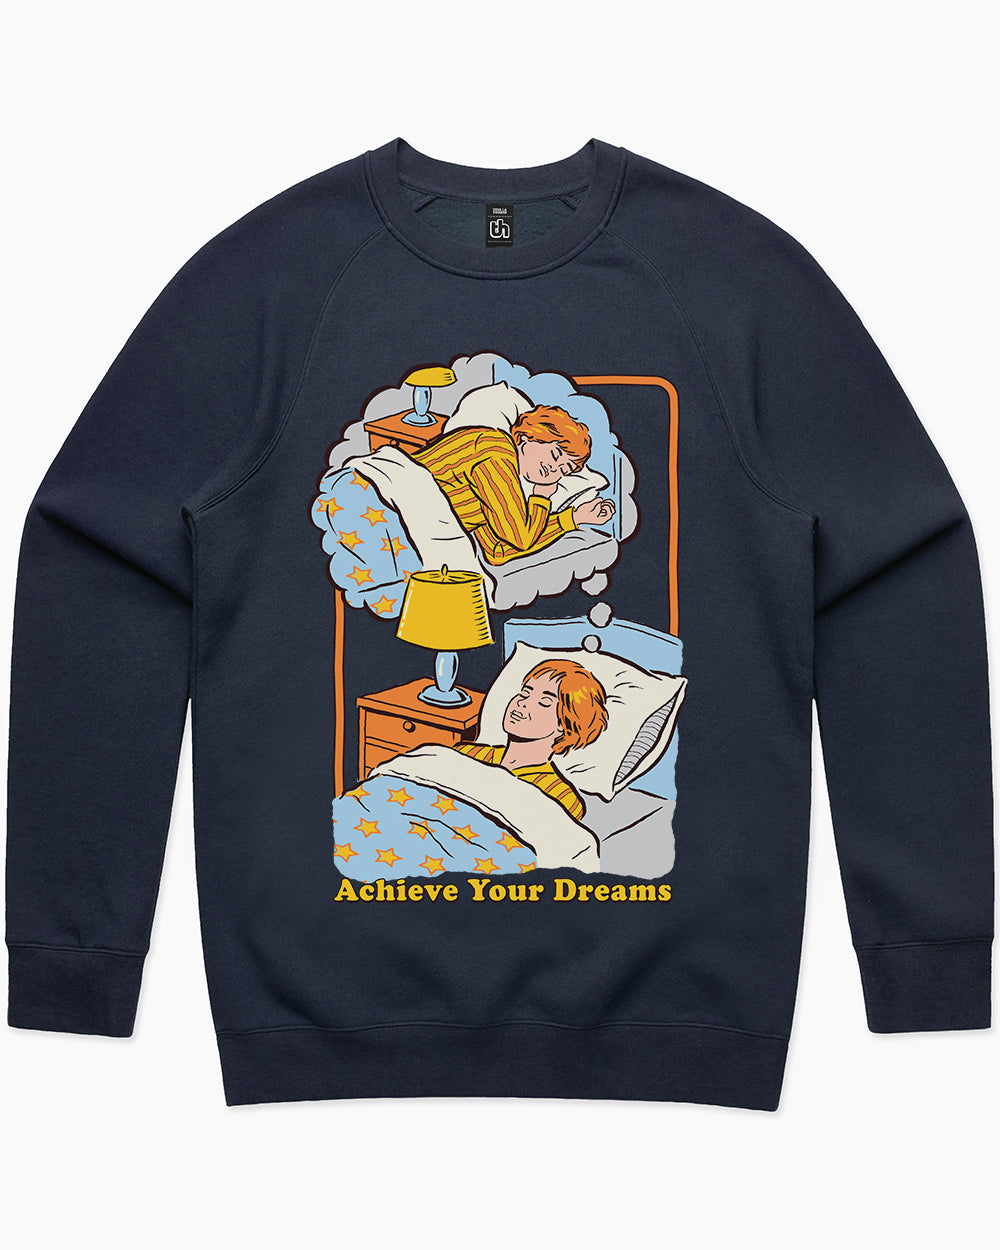 Achieve Your Dreams Sweater Australia Online #colour_navy